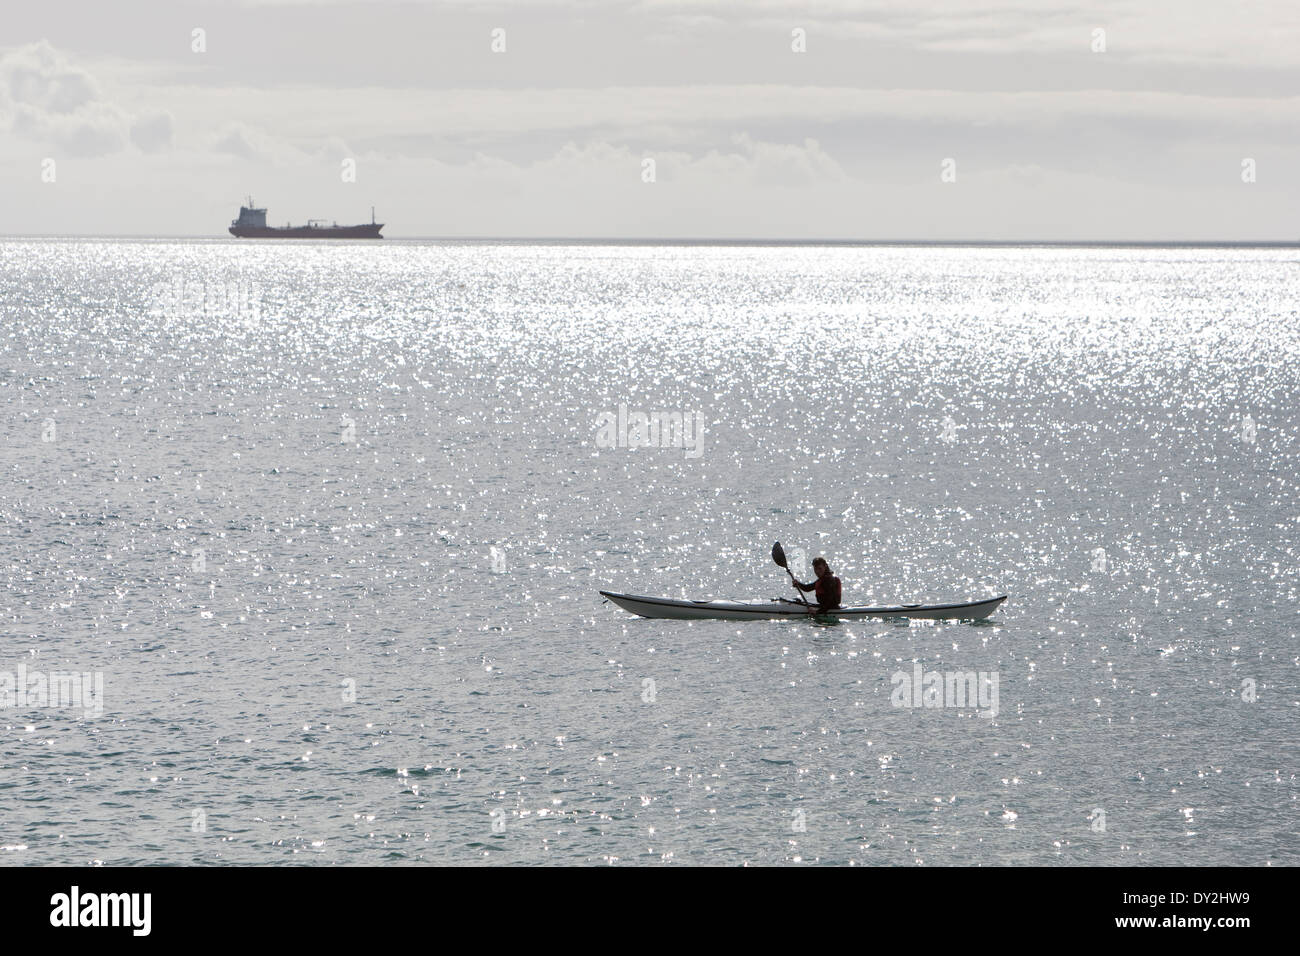 Un kayakista sienta en su kayak de mar off Maenporth playa, Falmouth, mientras que un buque se encuentra en el horizonte. Foto de stock